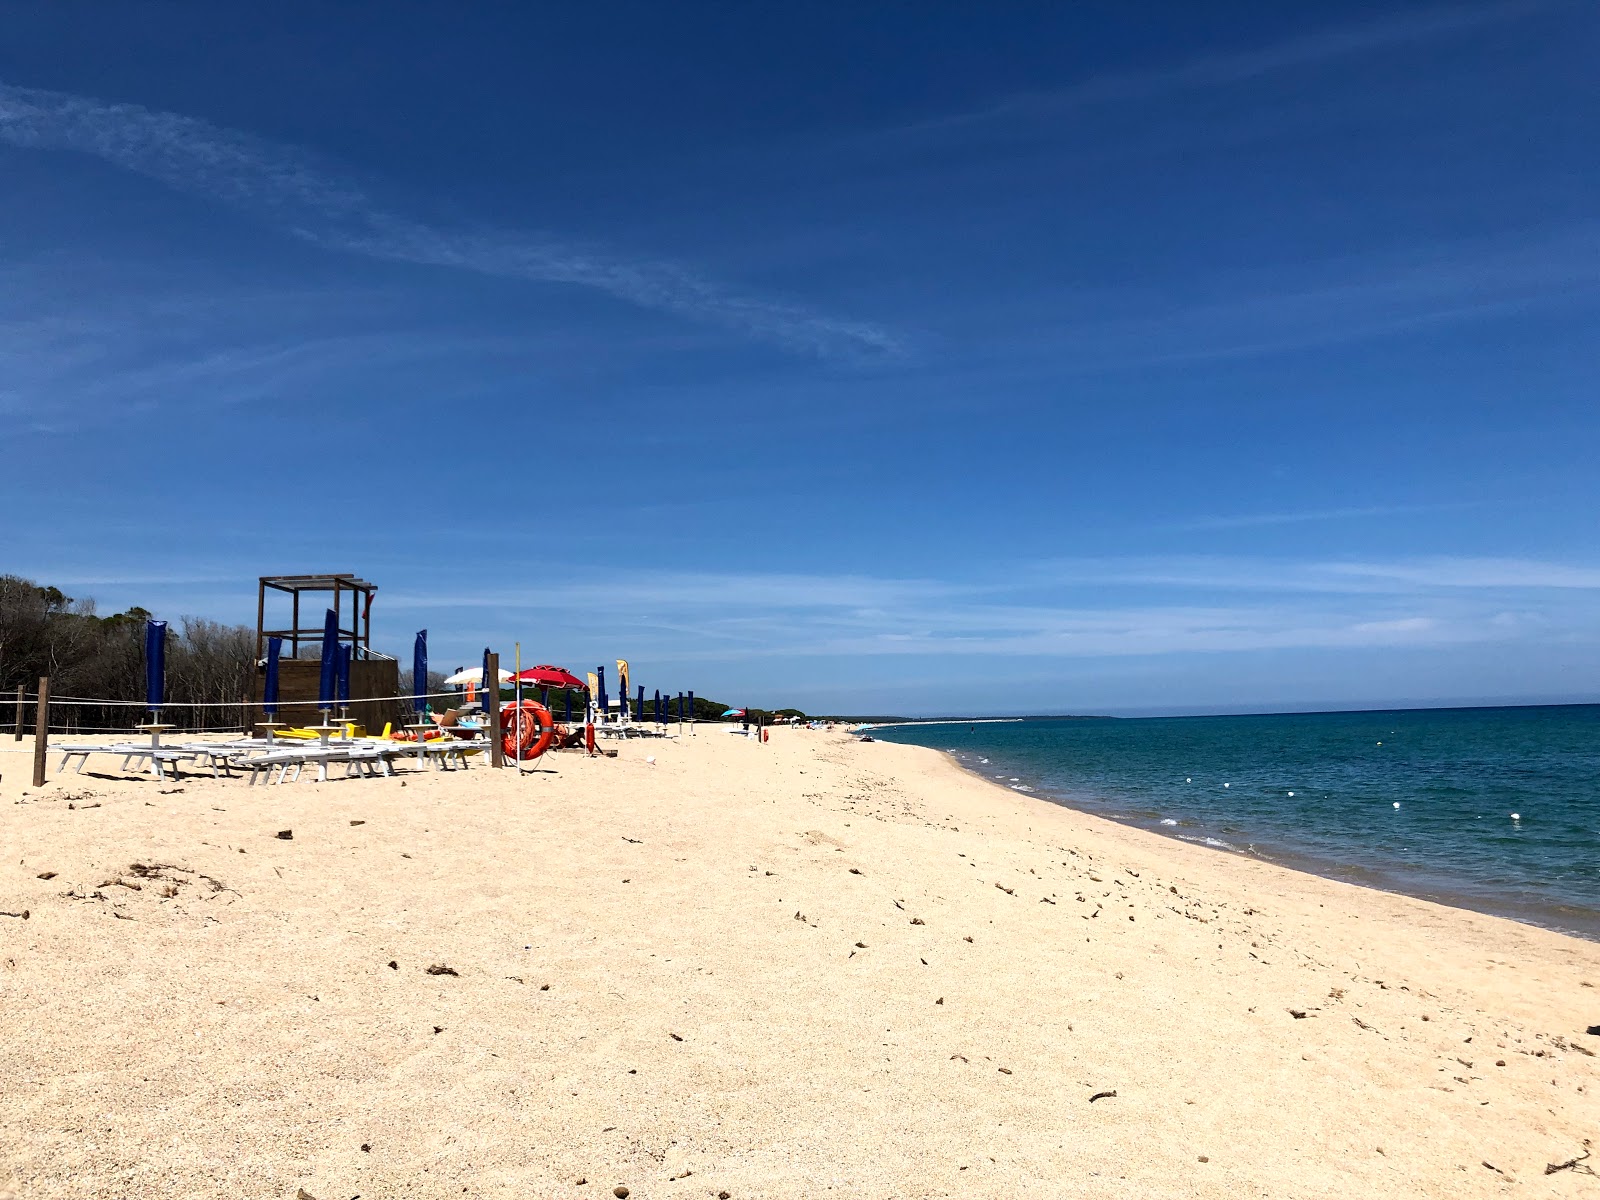 Foto de Spiaggia Su Barone - lugar popular entre los conocedores del relax